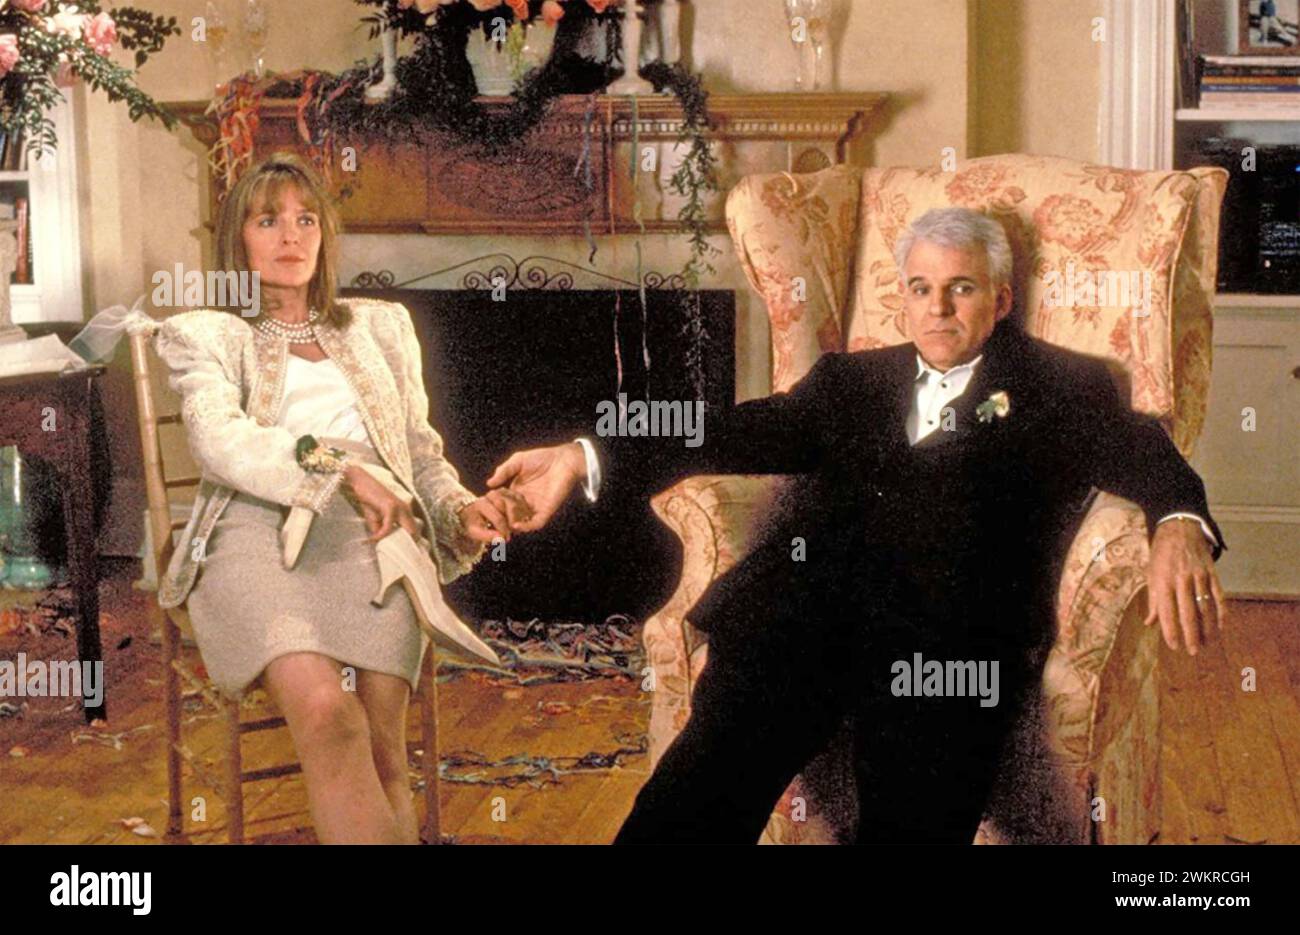 VATER DER BRAUT 1991 Buena Vista Pictures Distribution Film mit Diane Keaton als Nina Banks und Steve Martin als ihrem Ehemann George Stockfoto